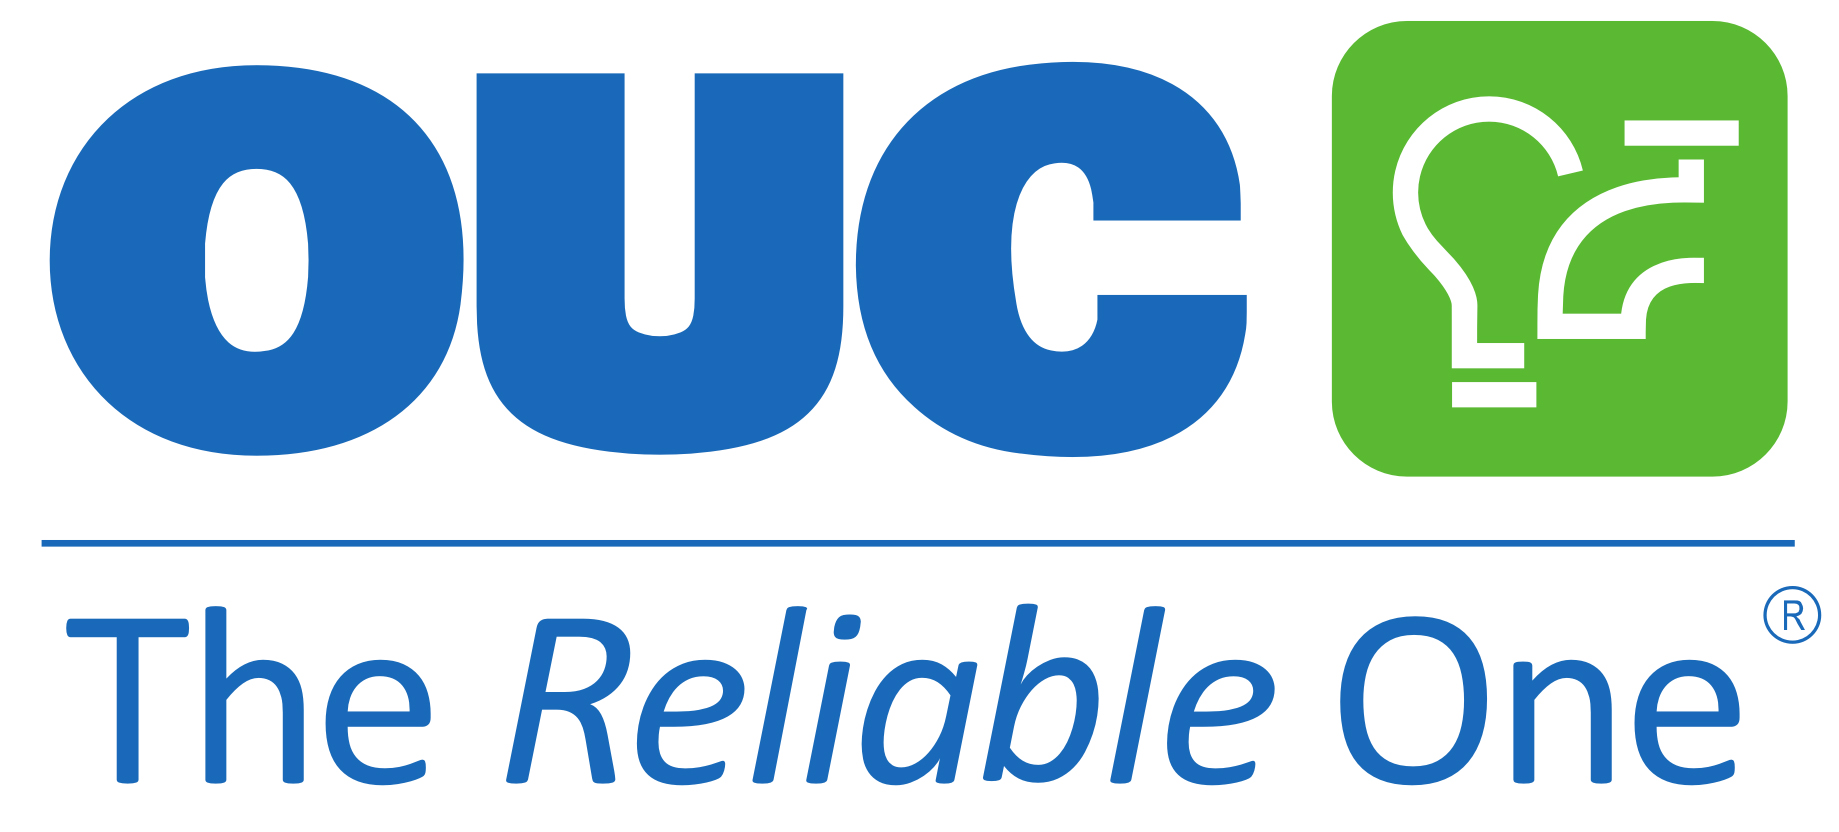 Orlando Utilities Commission logo.